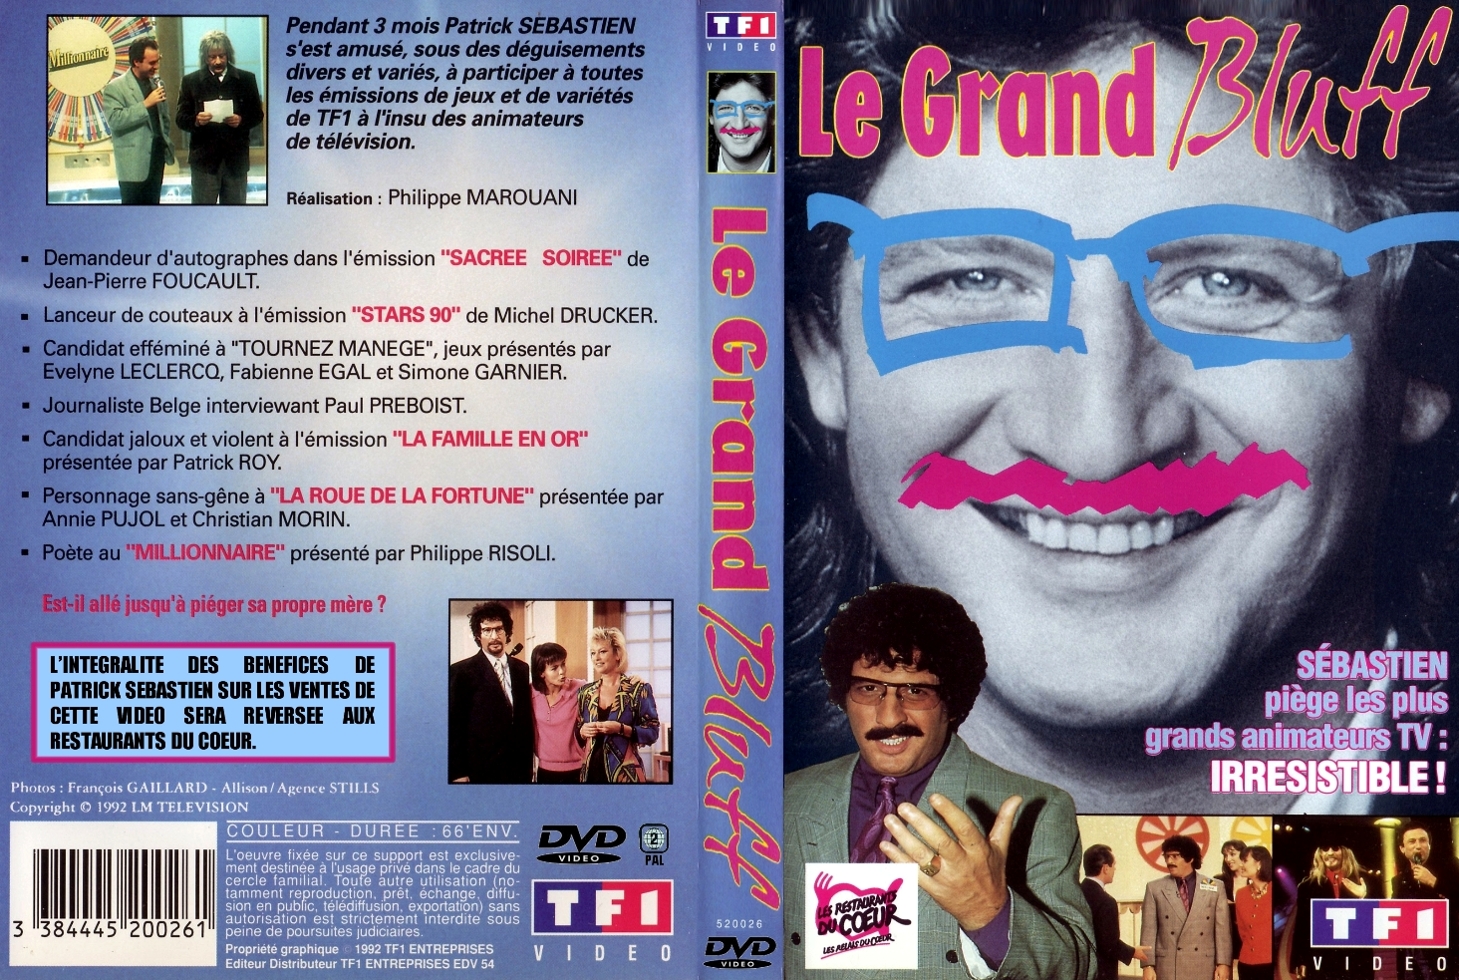 Jaquette DVD Le grand bluff (Patrick Sebastien) custom